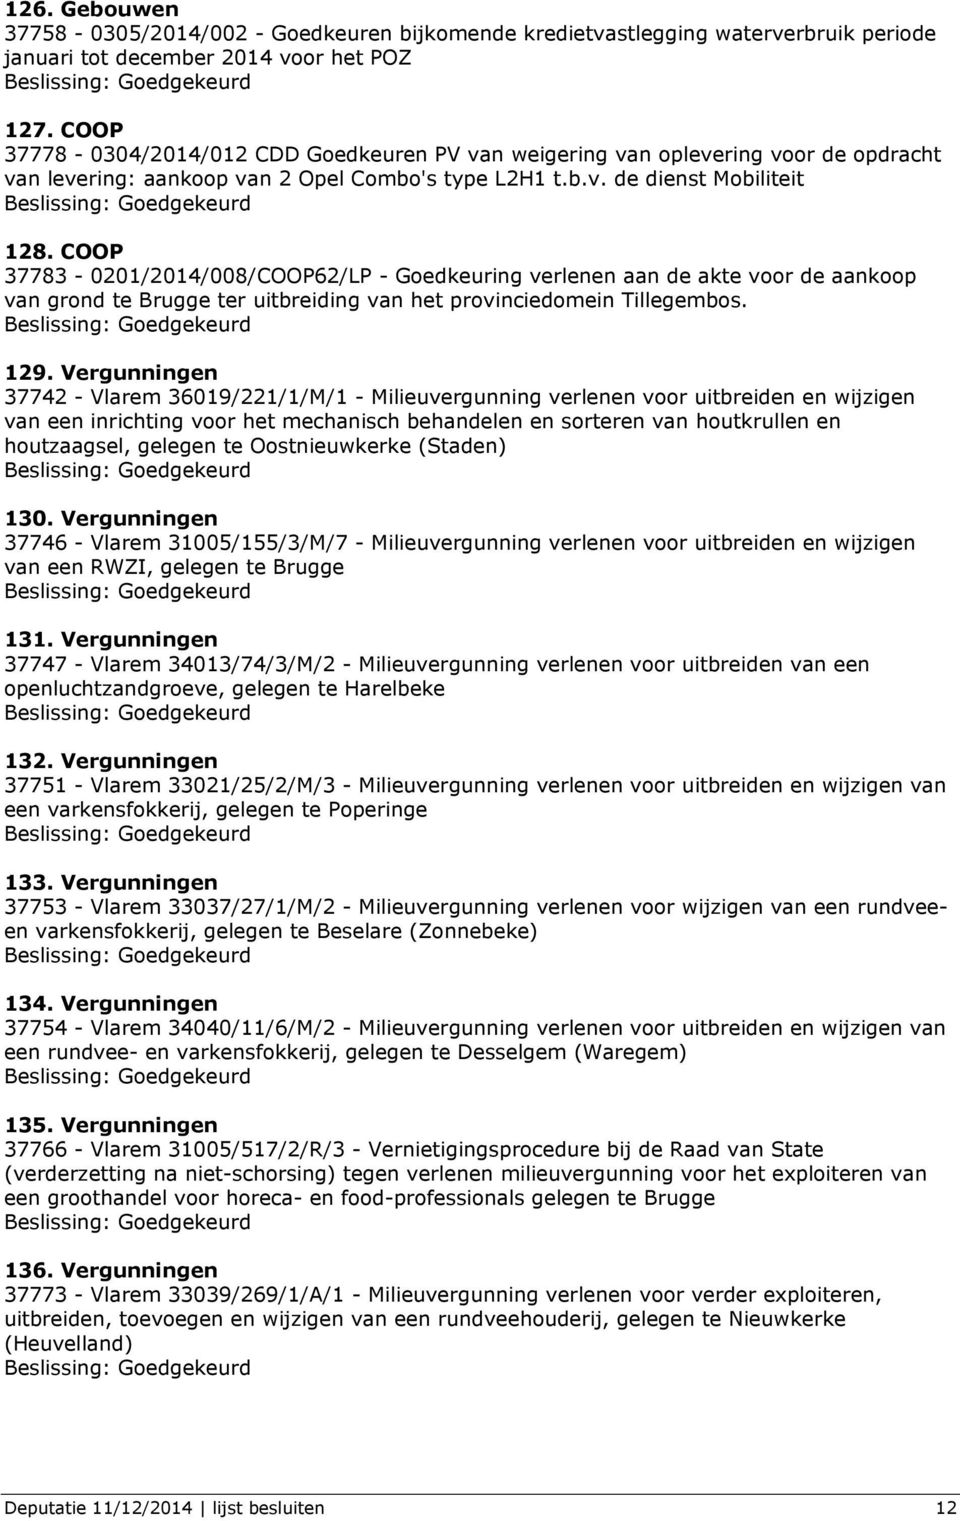 COOP 37783-0201/2014/008/COOP62/LP - Goedkeuring verlenen aan de akte voor de aankoop van grond te Brugge ter uitbreiding van het provinciedomein Tillegembos. 129.